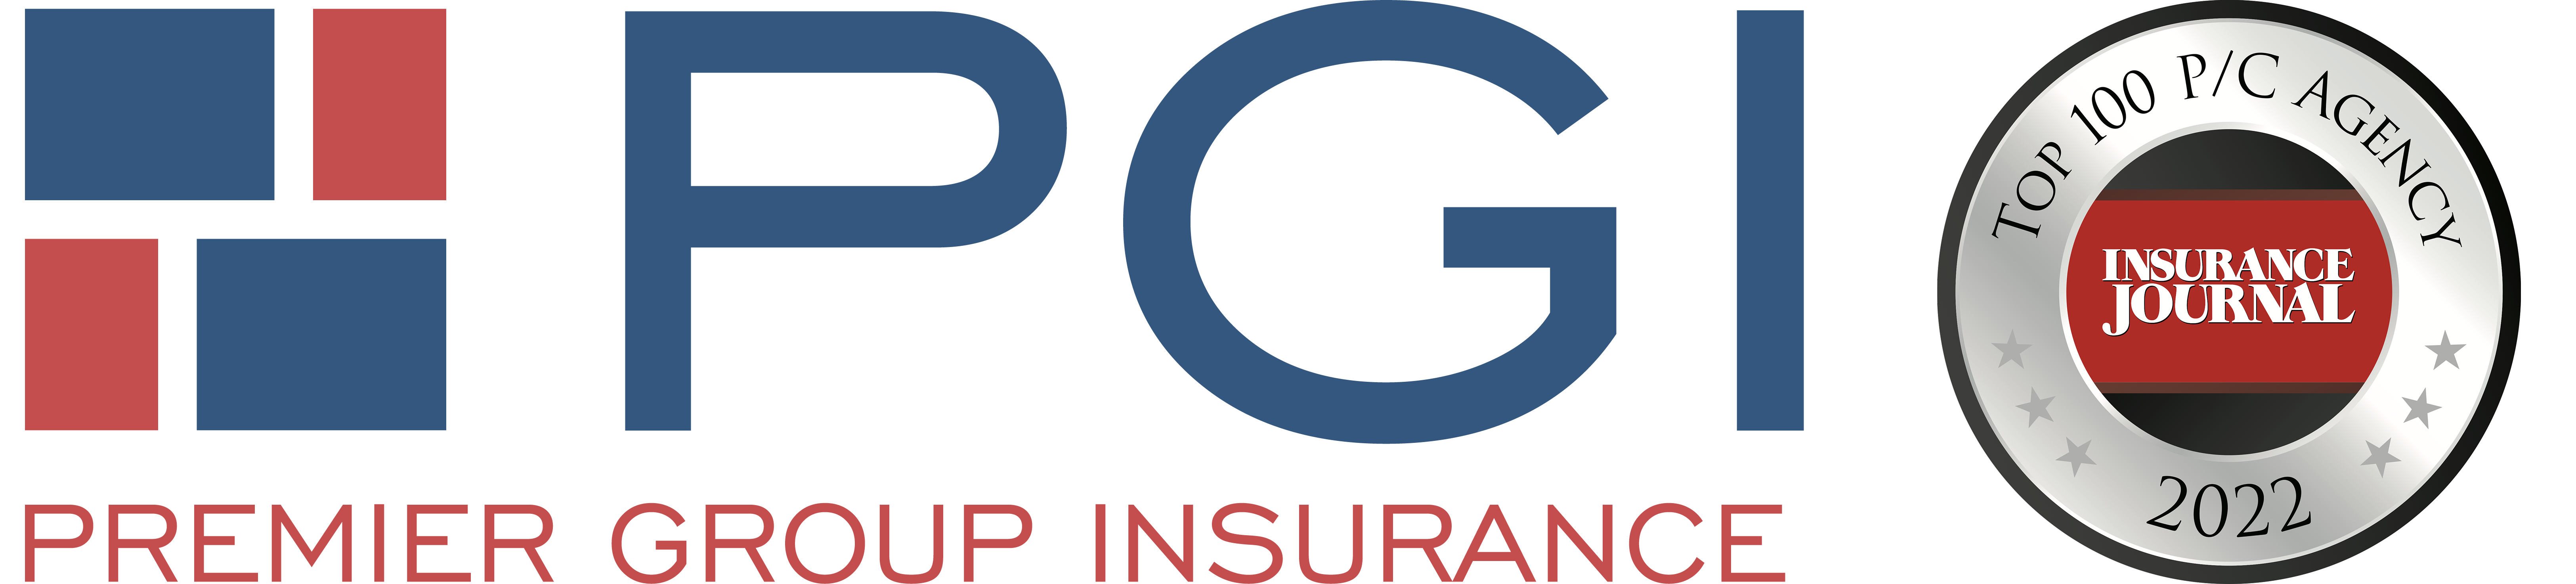 PGI Insurance